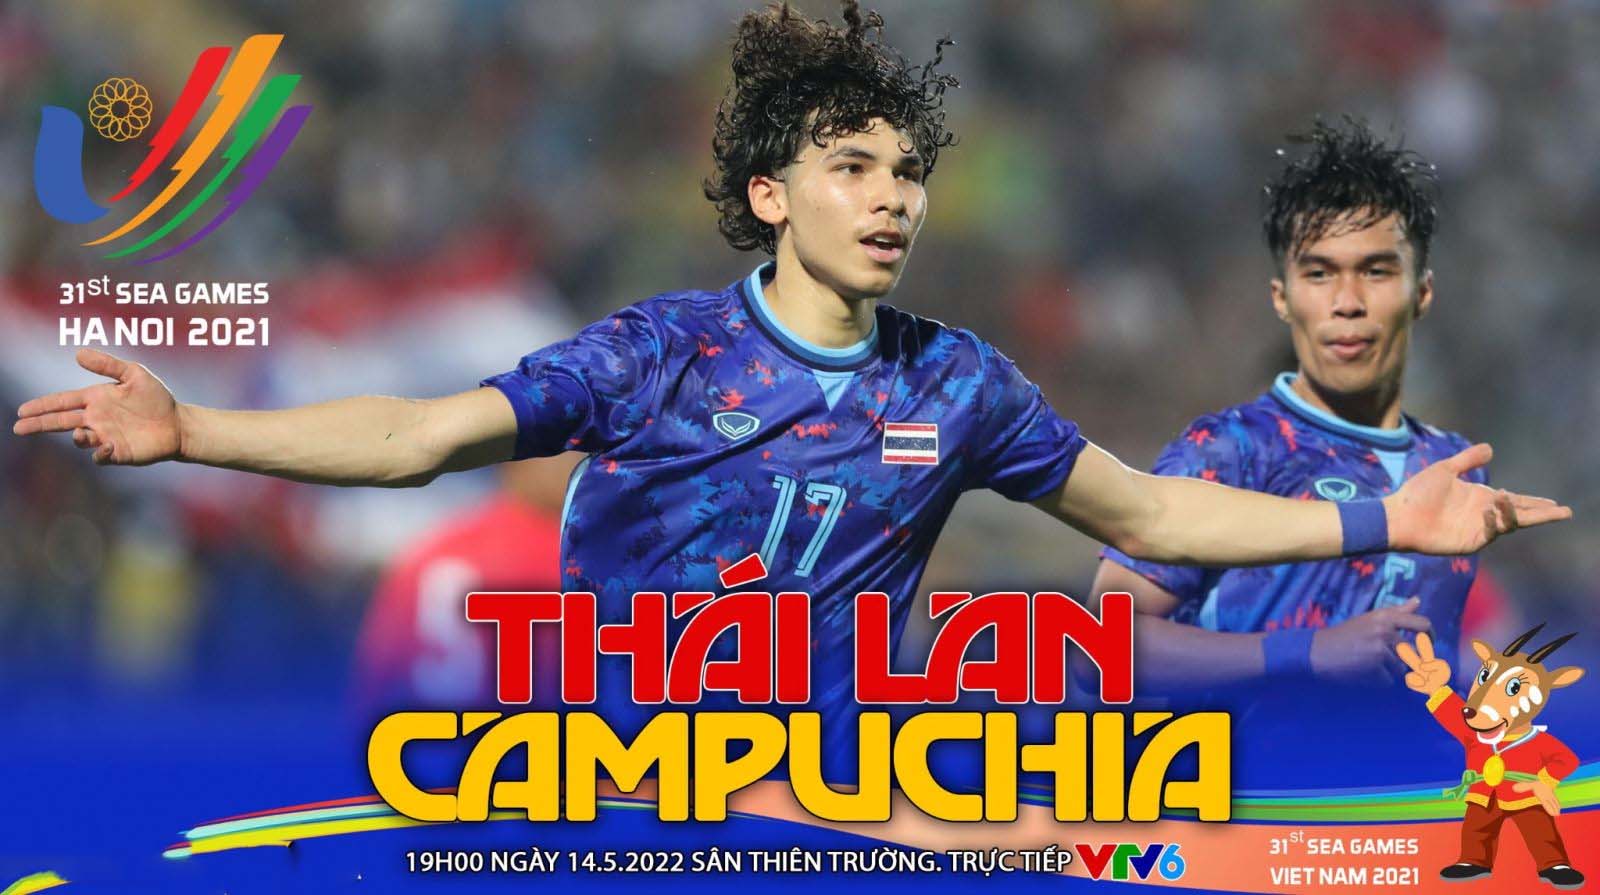 Xem trực tiếp bóng đá U23 Thái Lan vs U23 Campuchia ở đâu, kênh nào? Trực tiếp bóng đá SEA Games 31